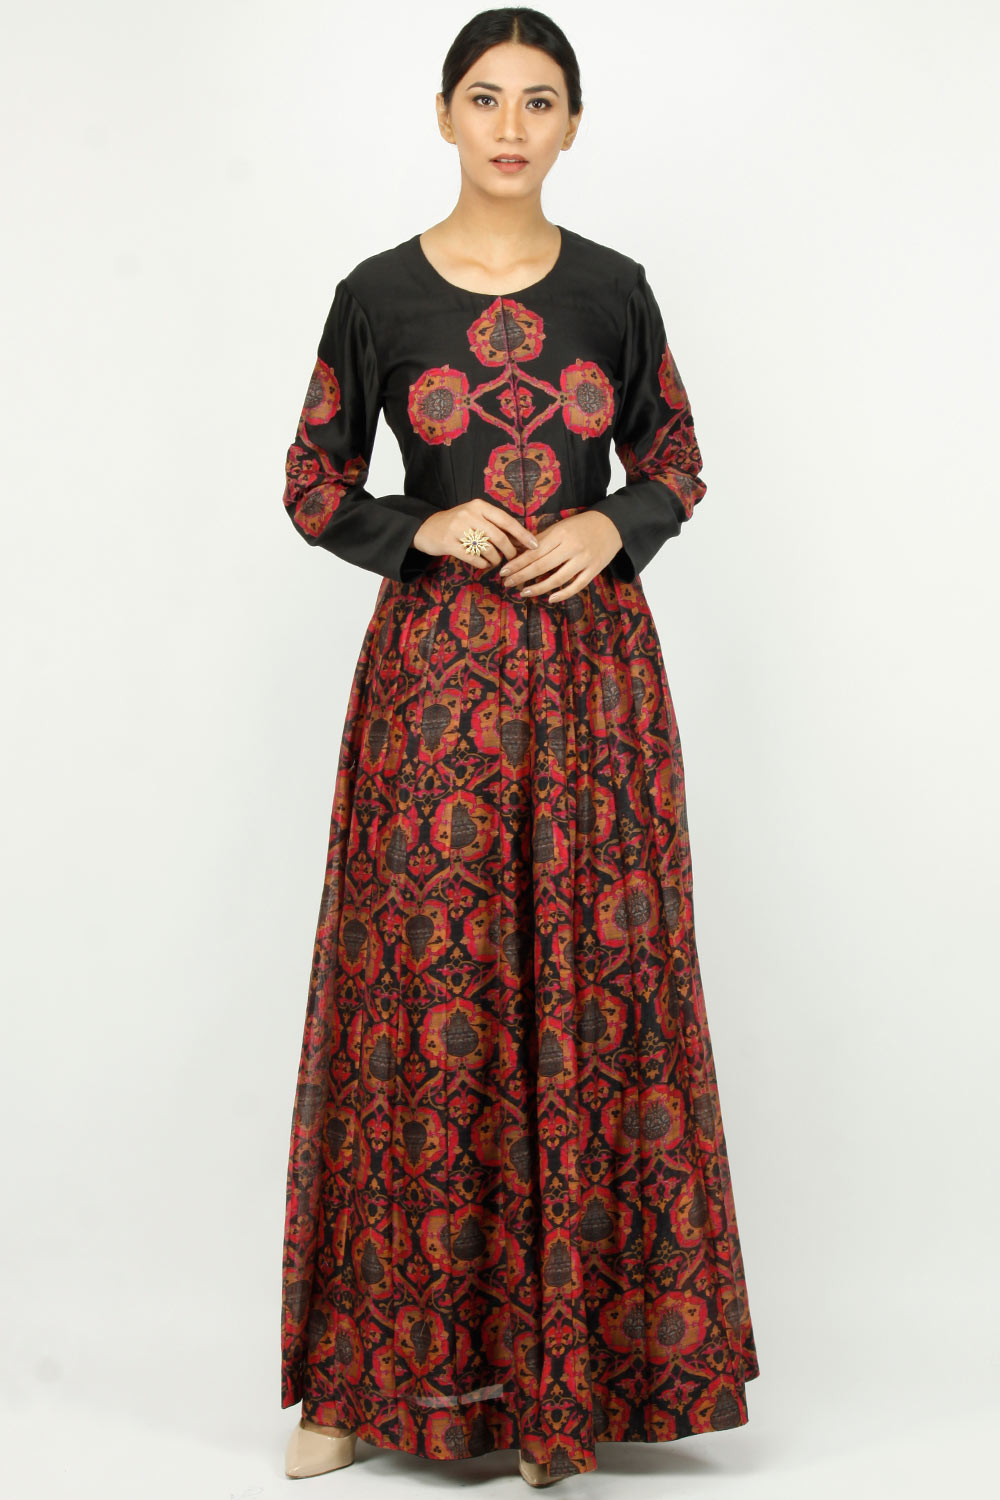 Alok & Harsh indian designer online printed anarkali dresses